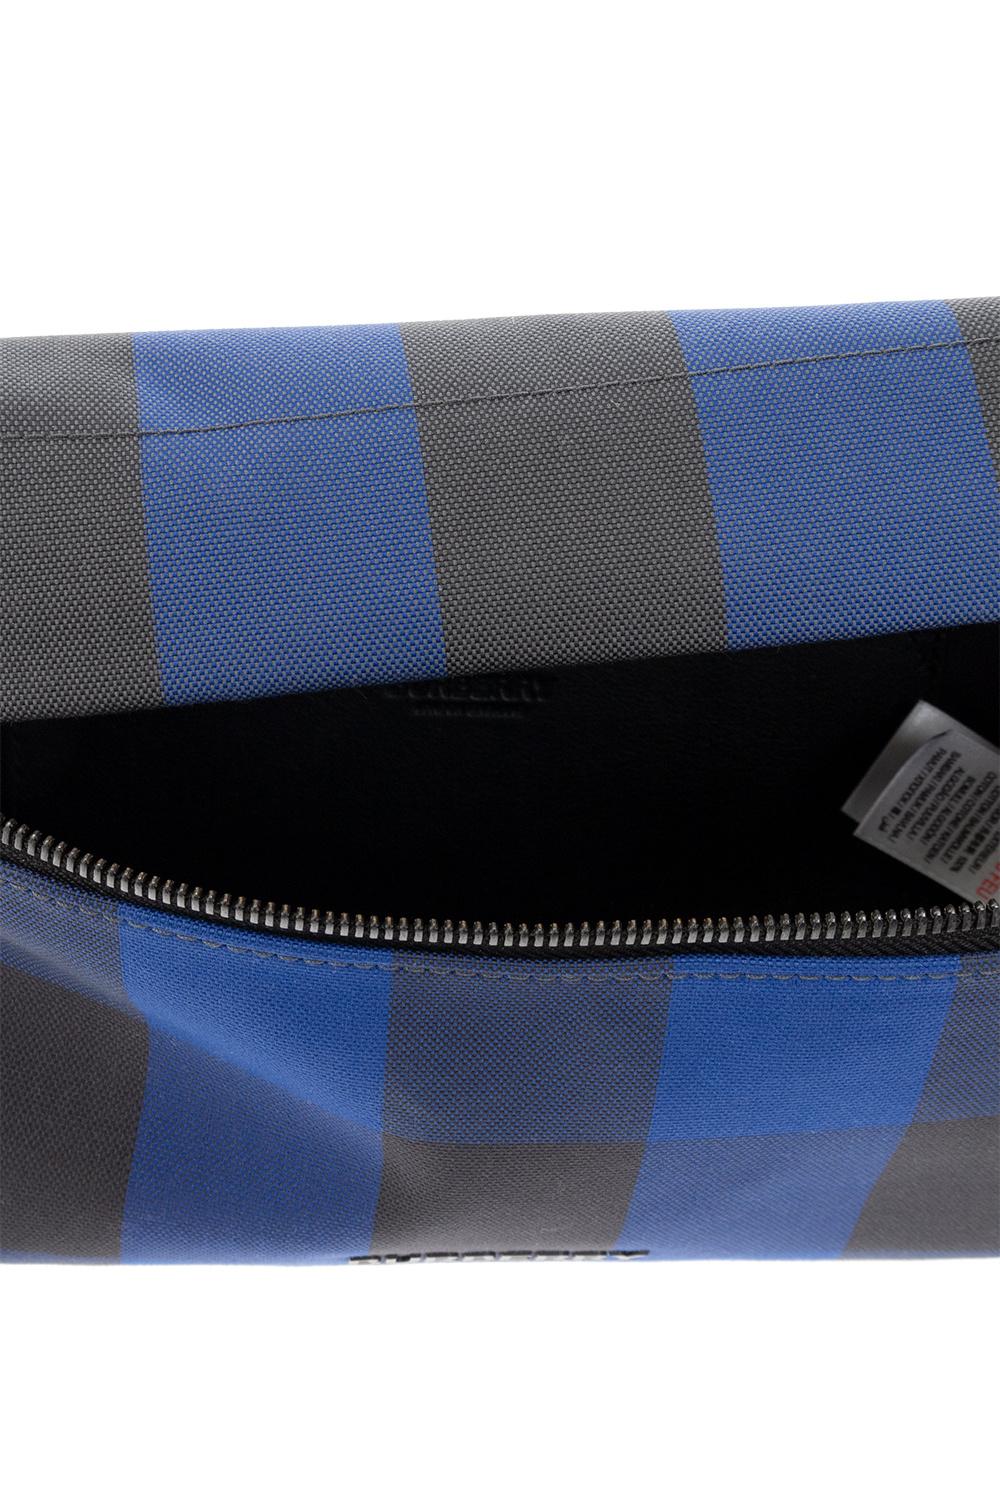 Burberry Sonny Bom Leather Belt Bag - Blue